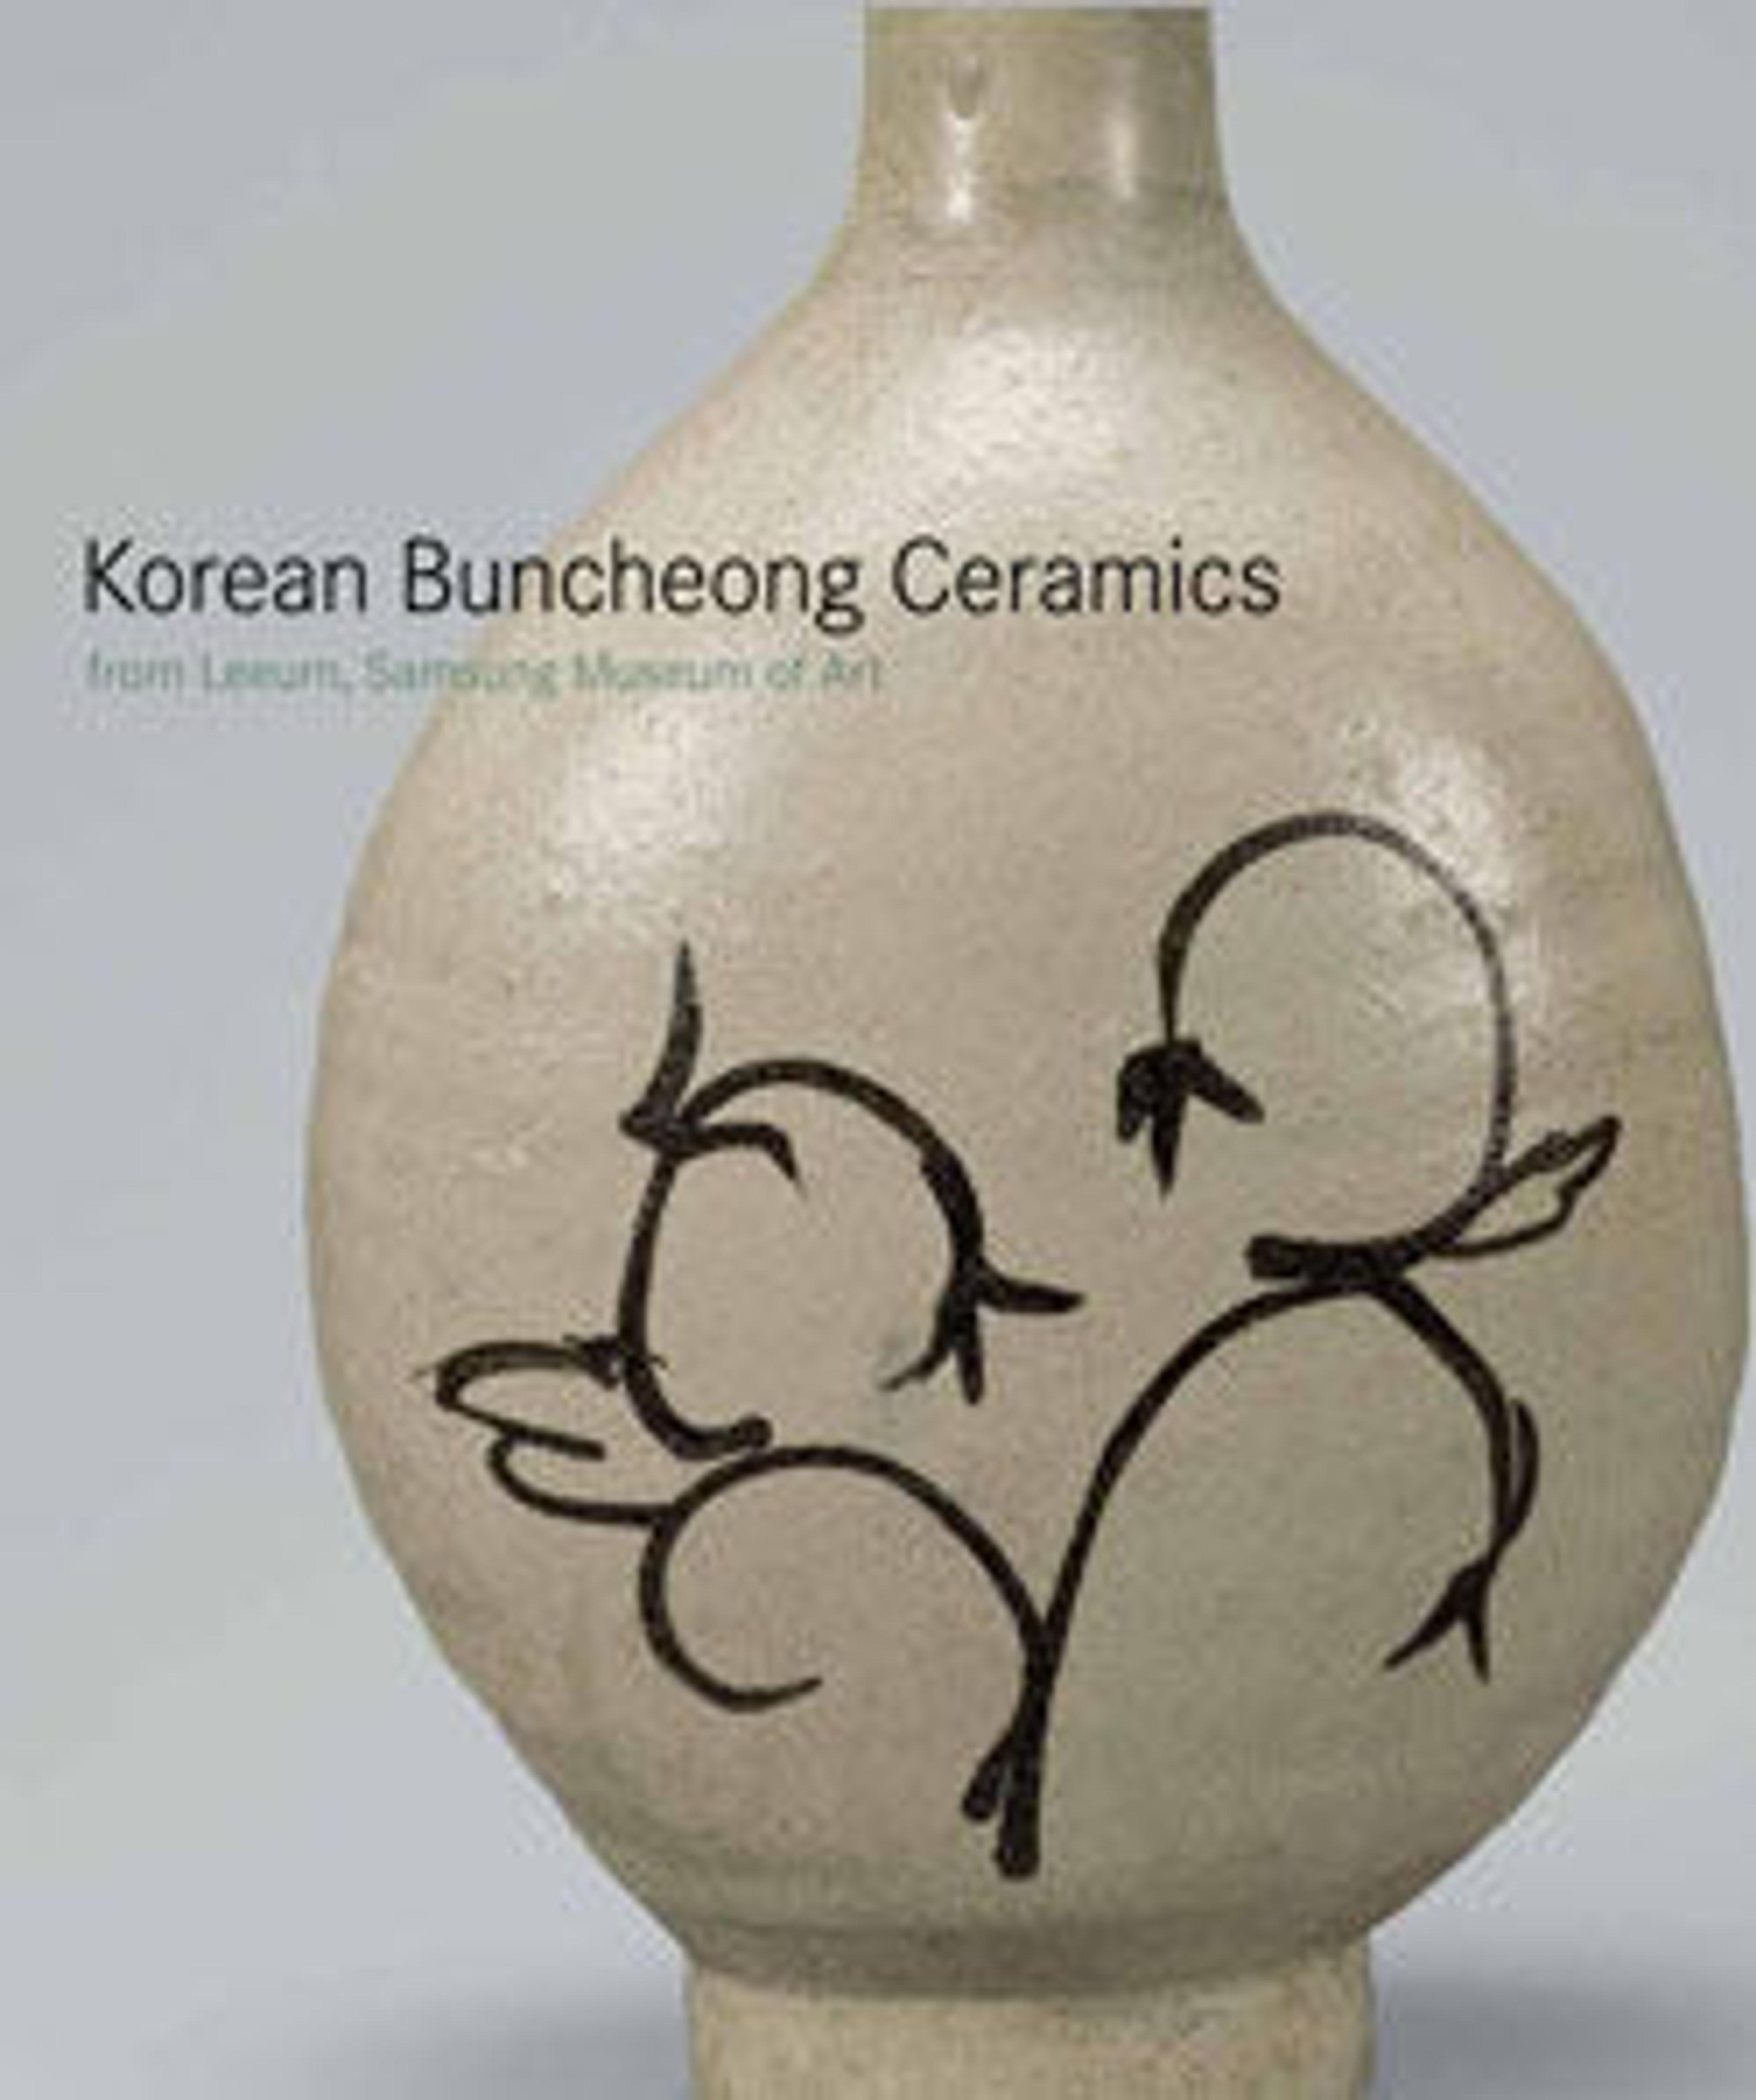 Korean Buncheong Ceramics from Leeum, Samsung Museum of Art